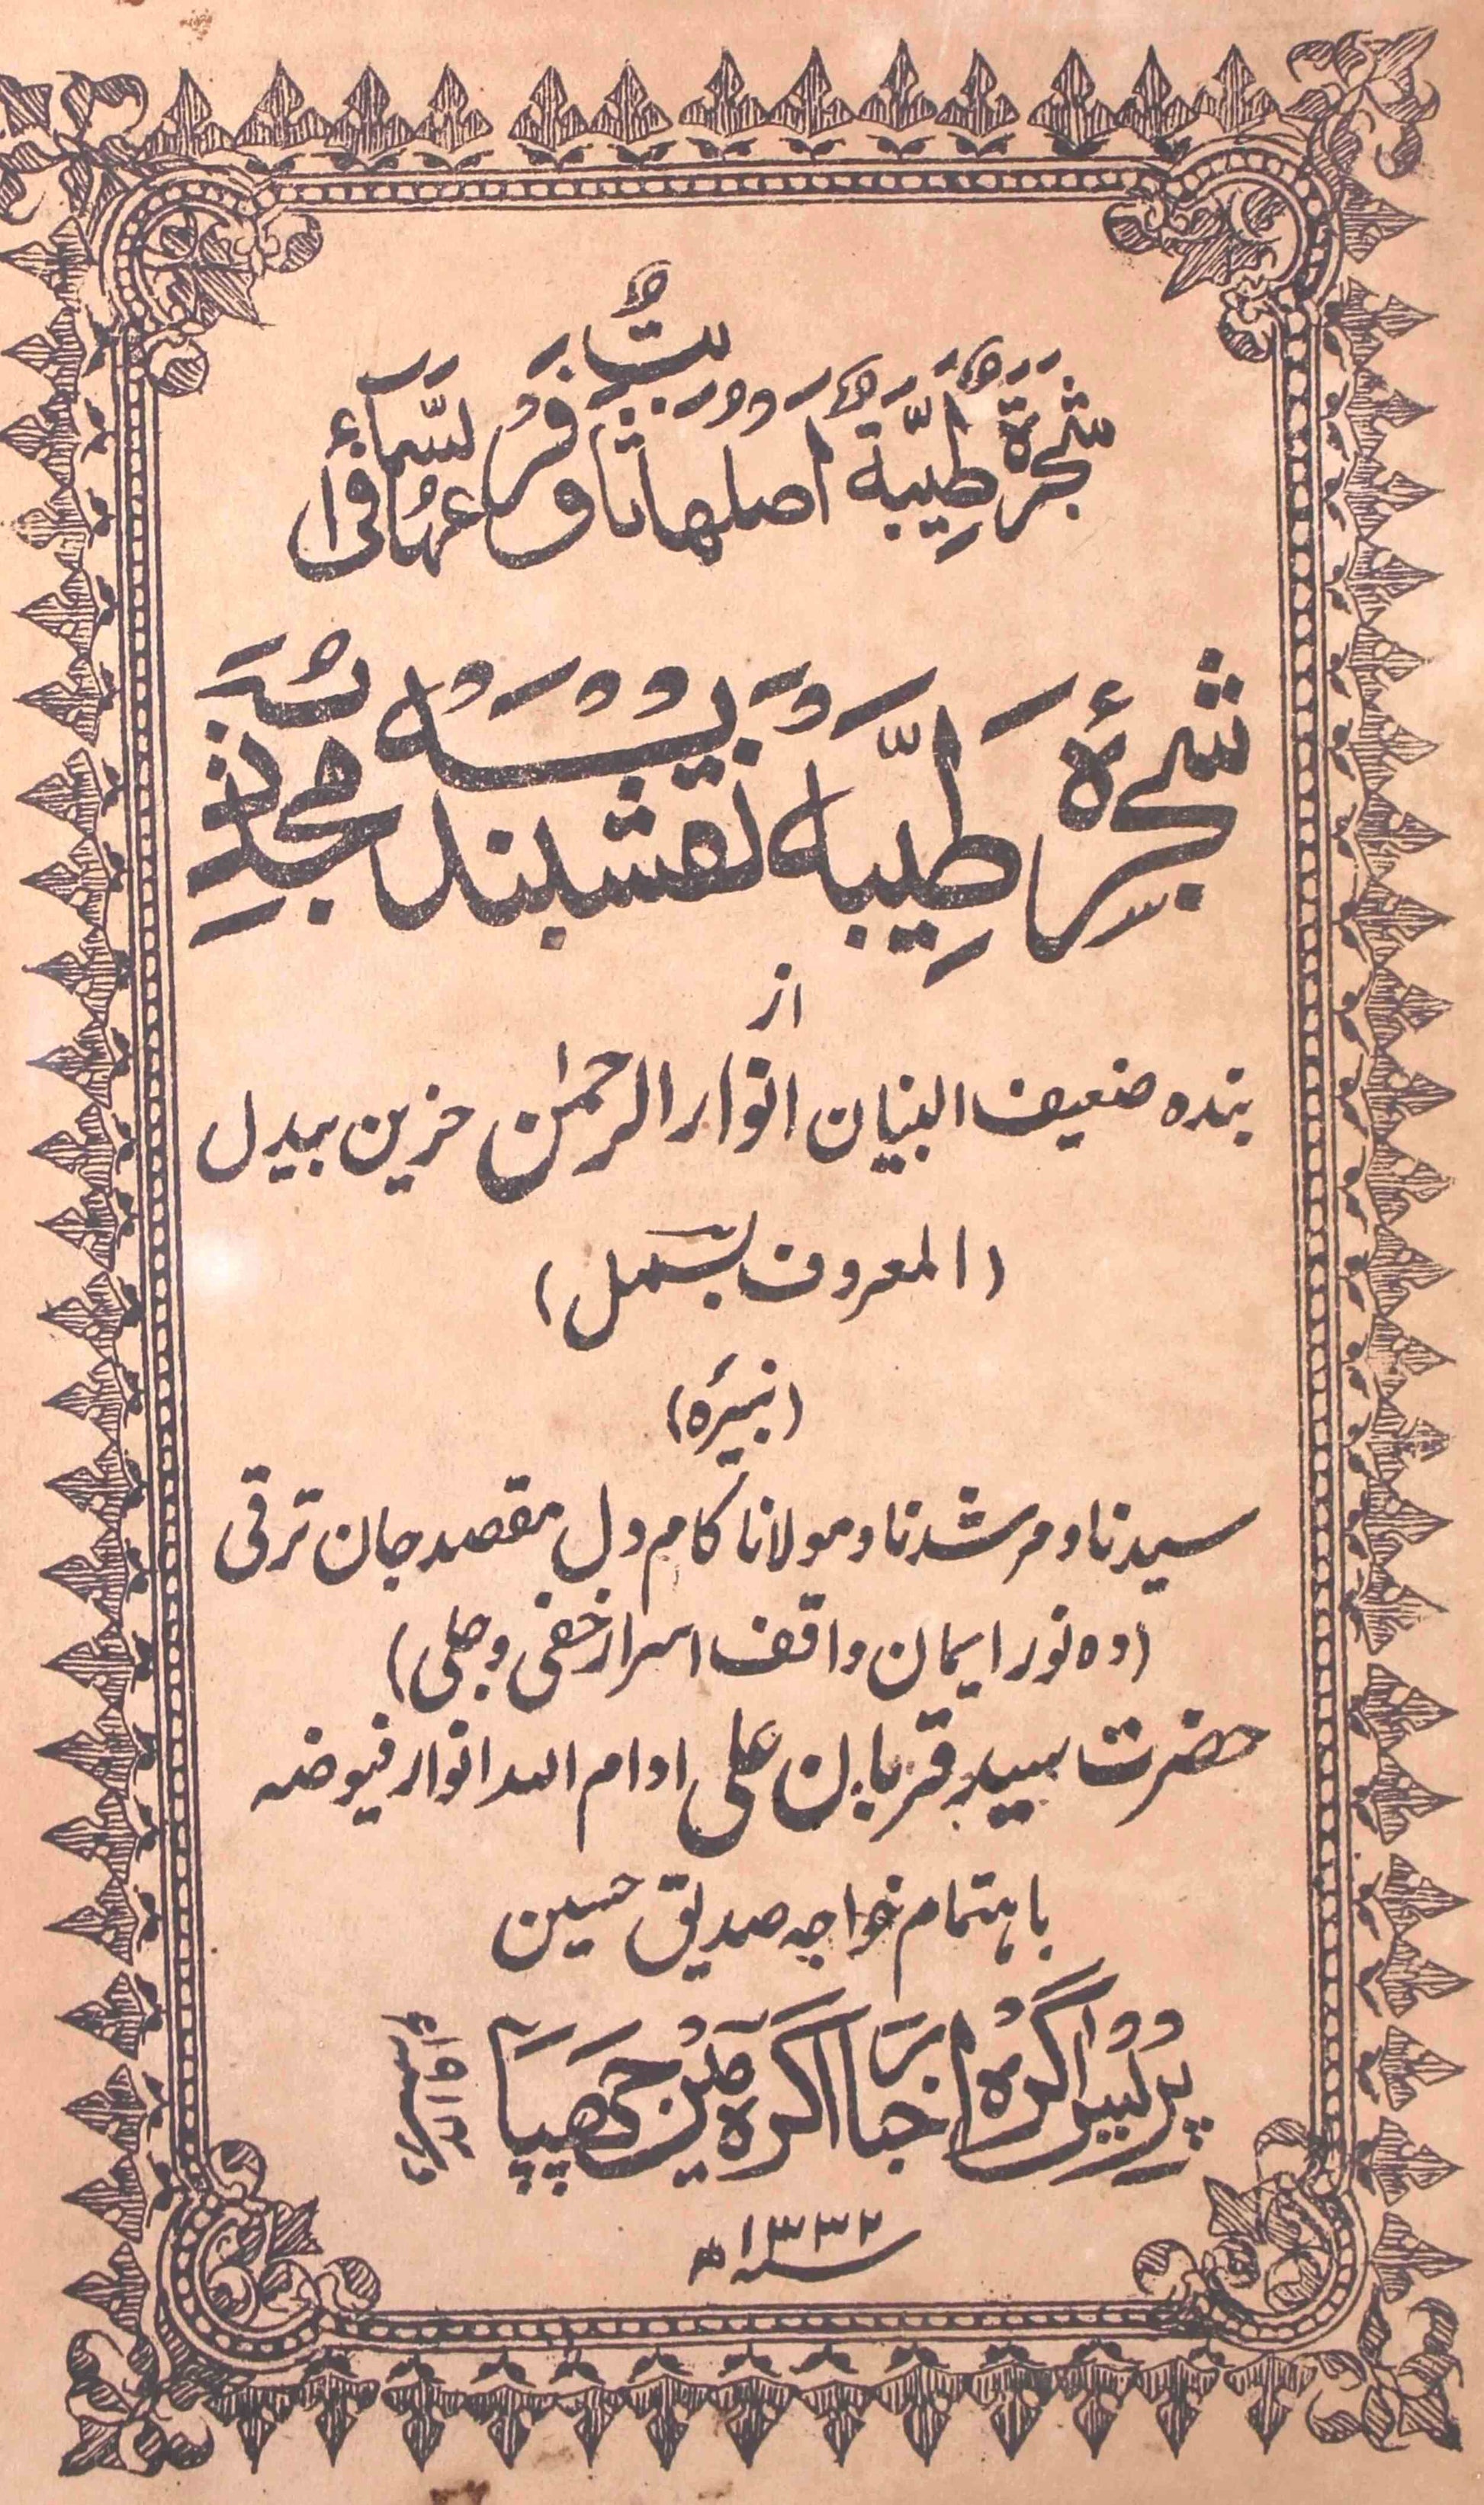 Shajra-e-Tayyaba Naqshbandiya Mujaddiya